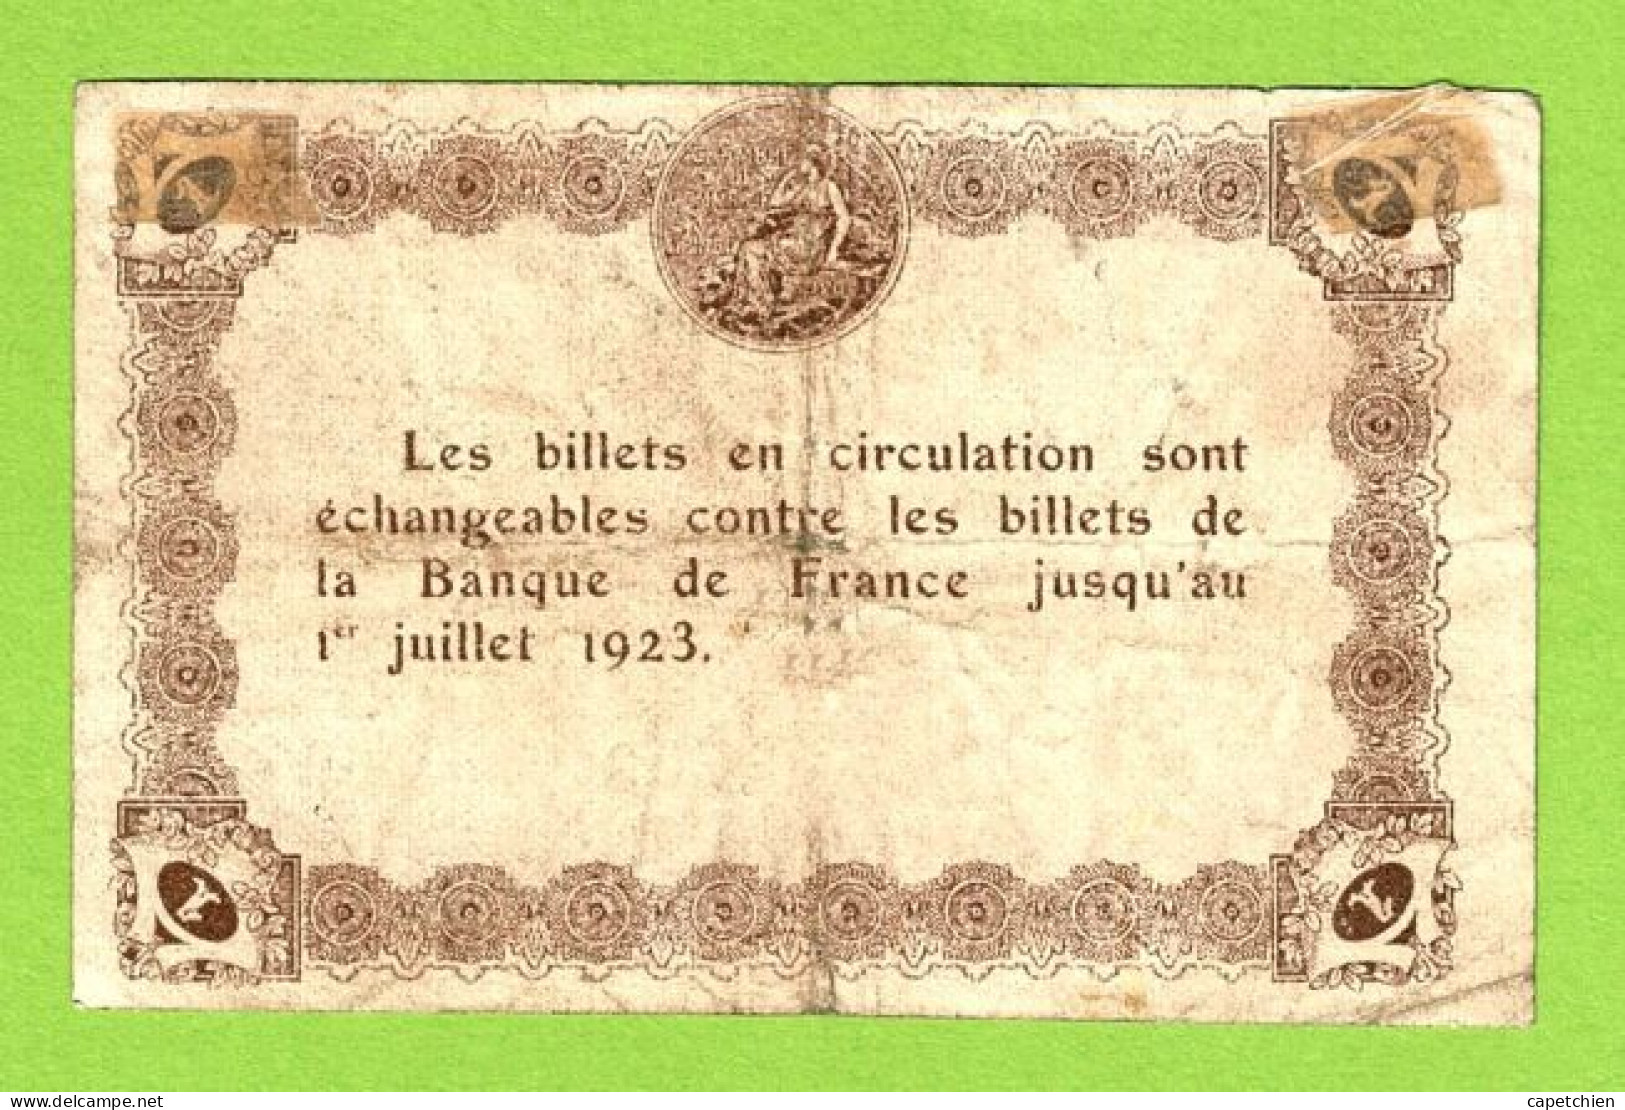 FRANCE / EPINAL / 1 FRANC/ 20 MAI 1920 / N° 673703 - Cámara De Comercio